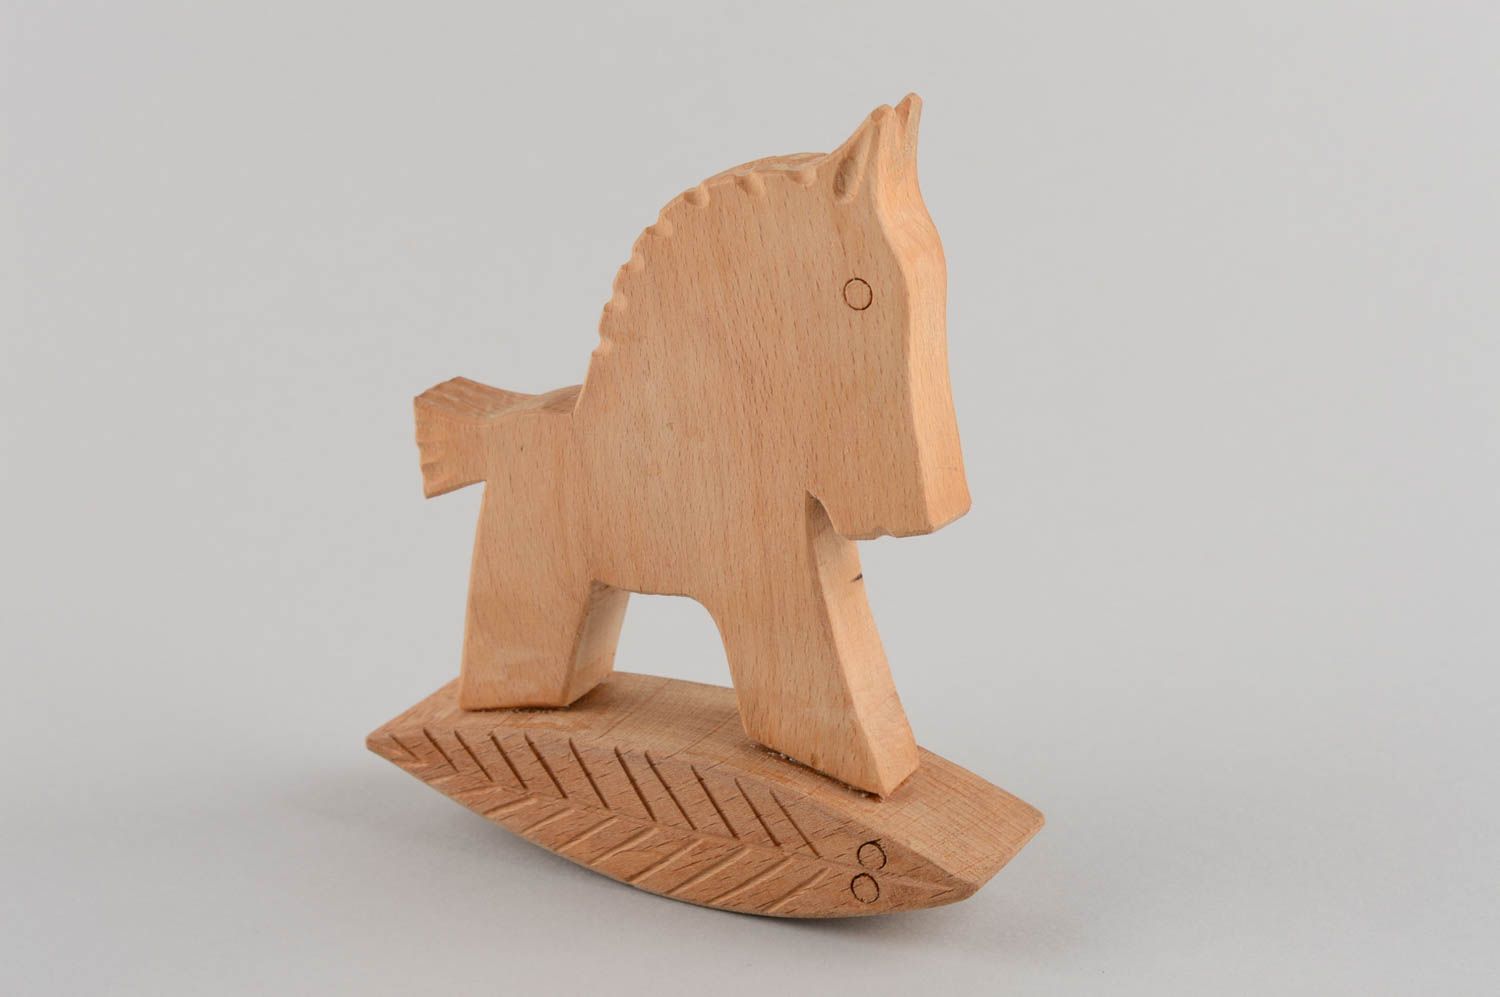 Wooden rocking horse toy for children handmade nursery decor ideas photo 2